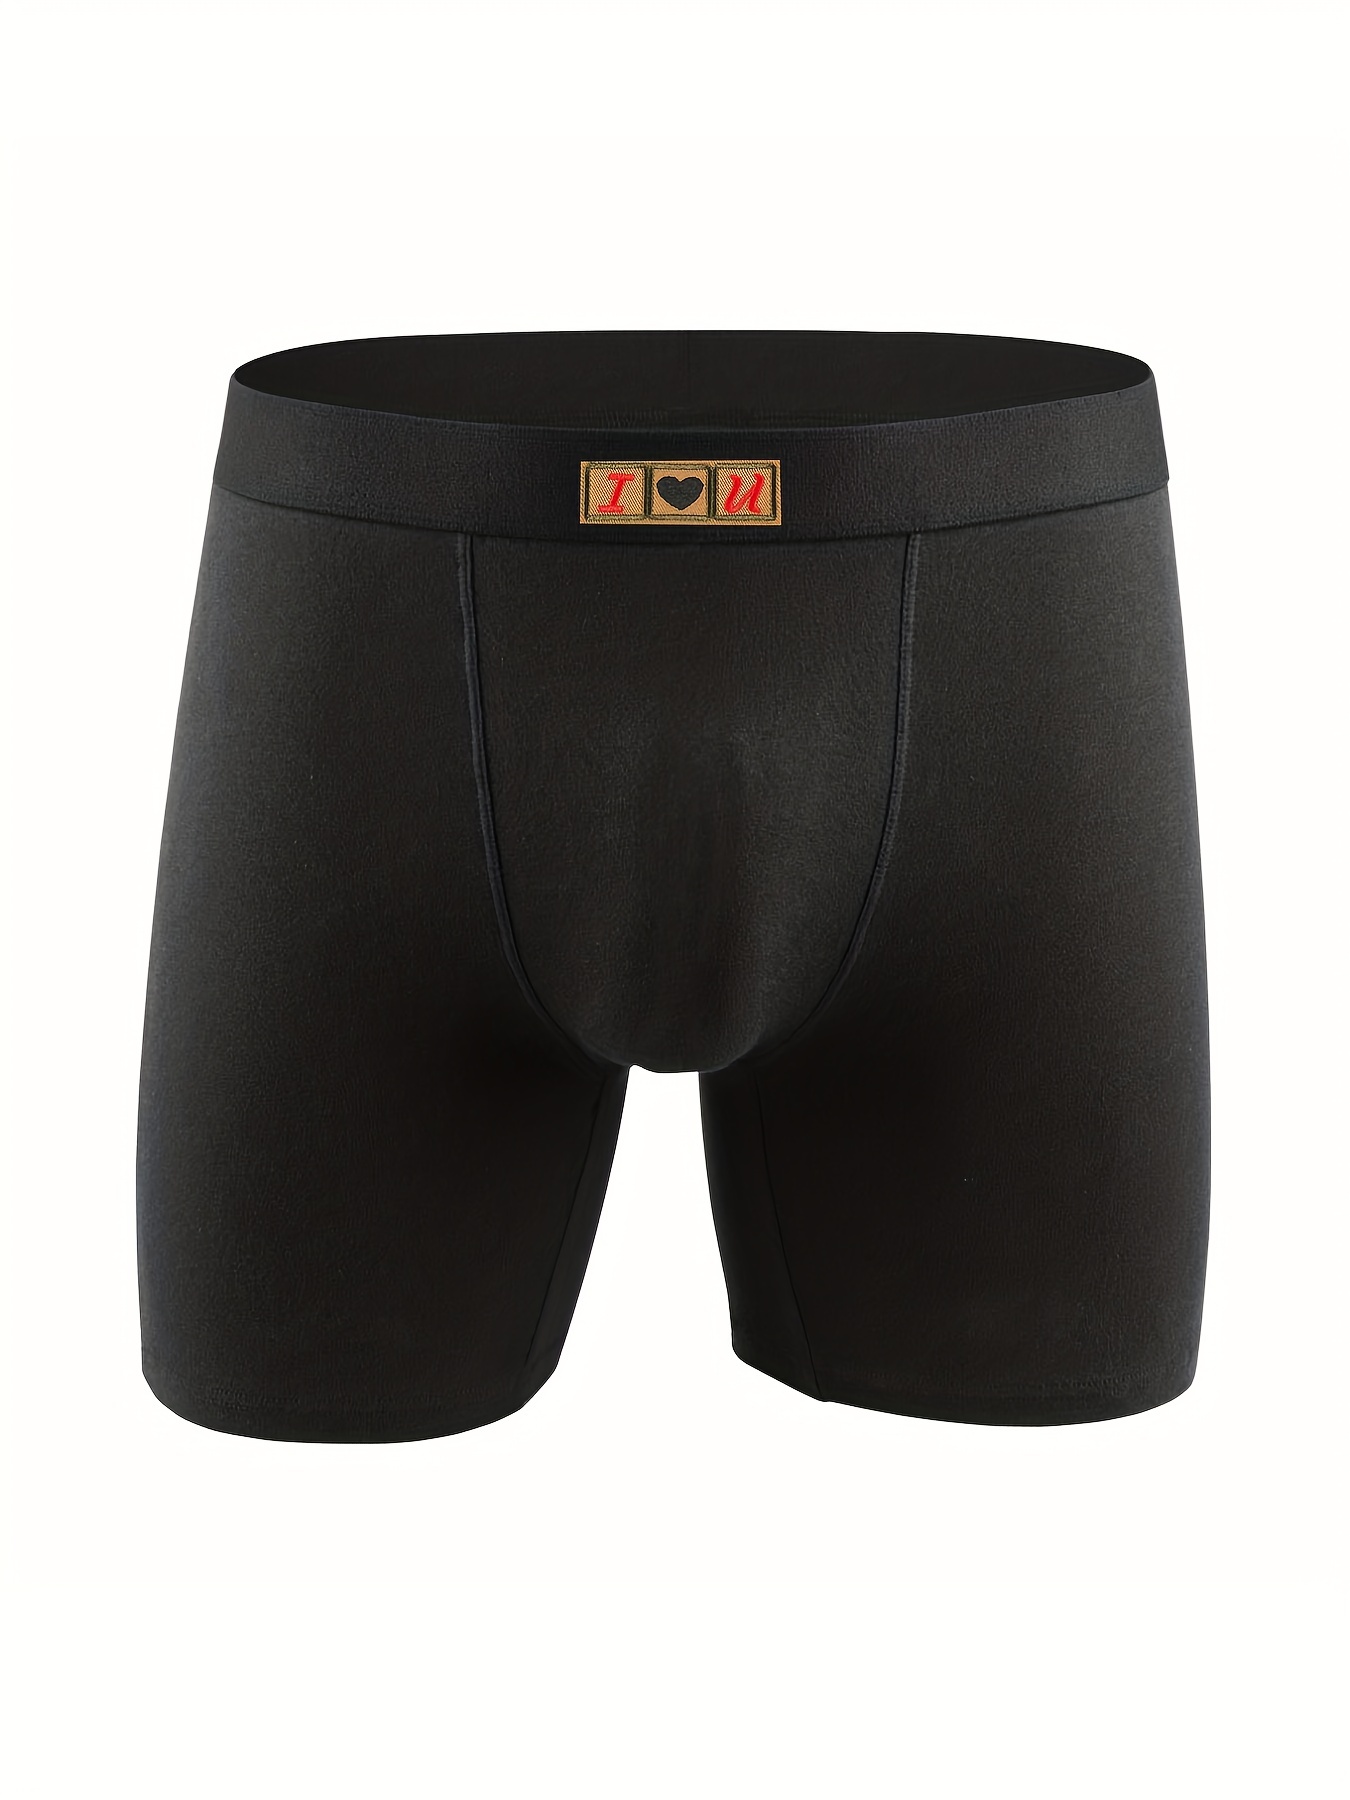 MeUndies Men's Boxer Brief Underwear white Sizes M